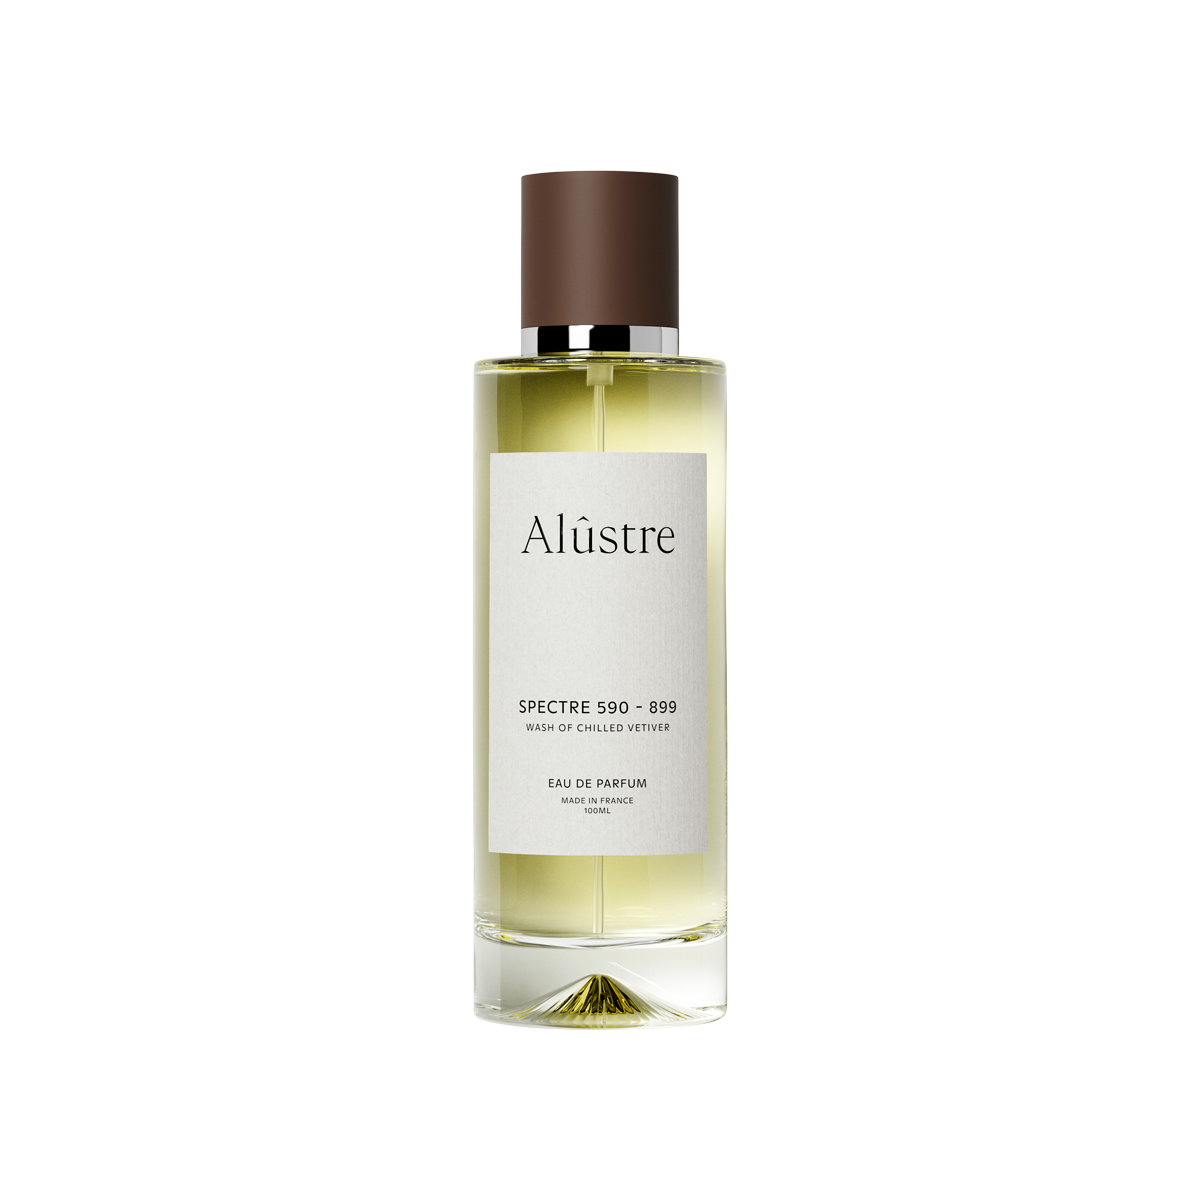 Alûstre - Spectre 590 - 899 Eau de Parfum